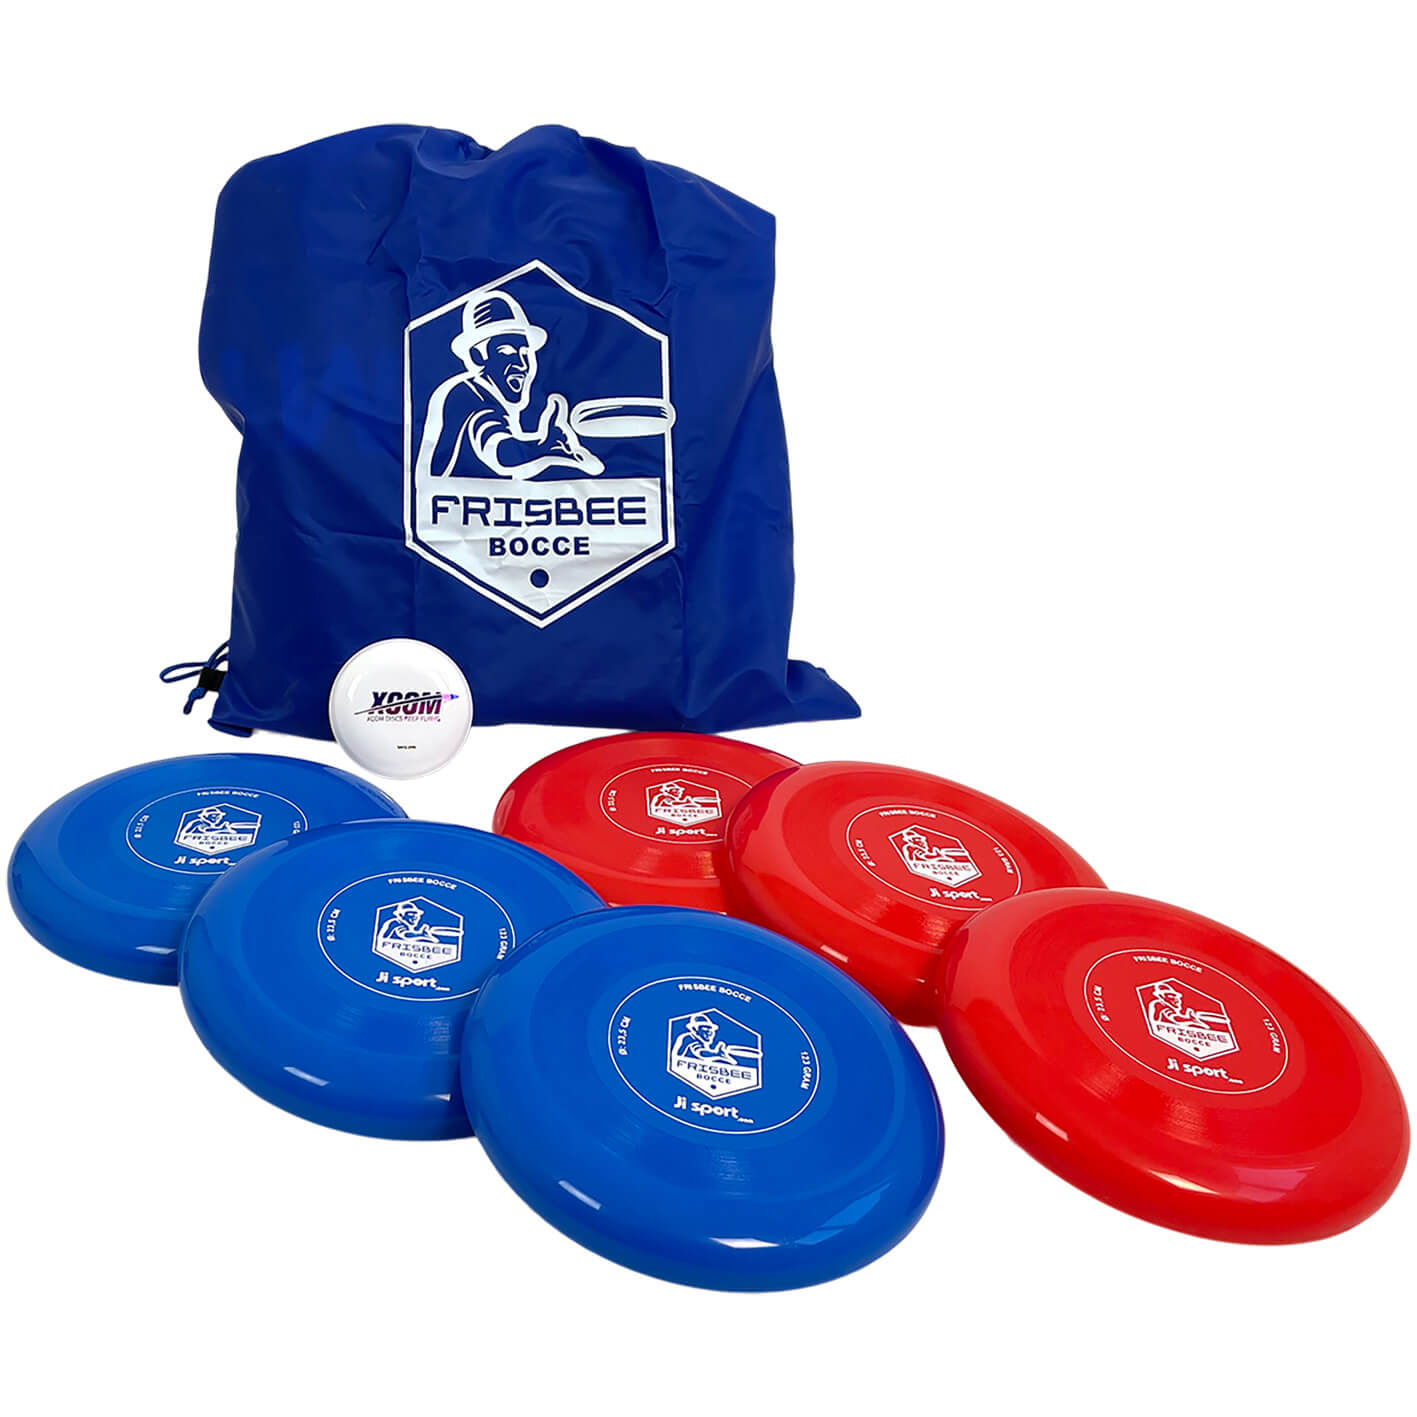 Frisbee boccia paket